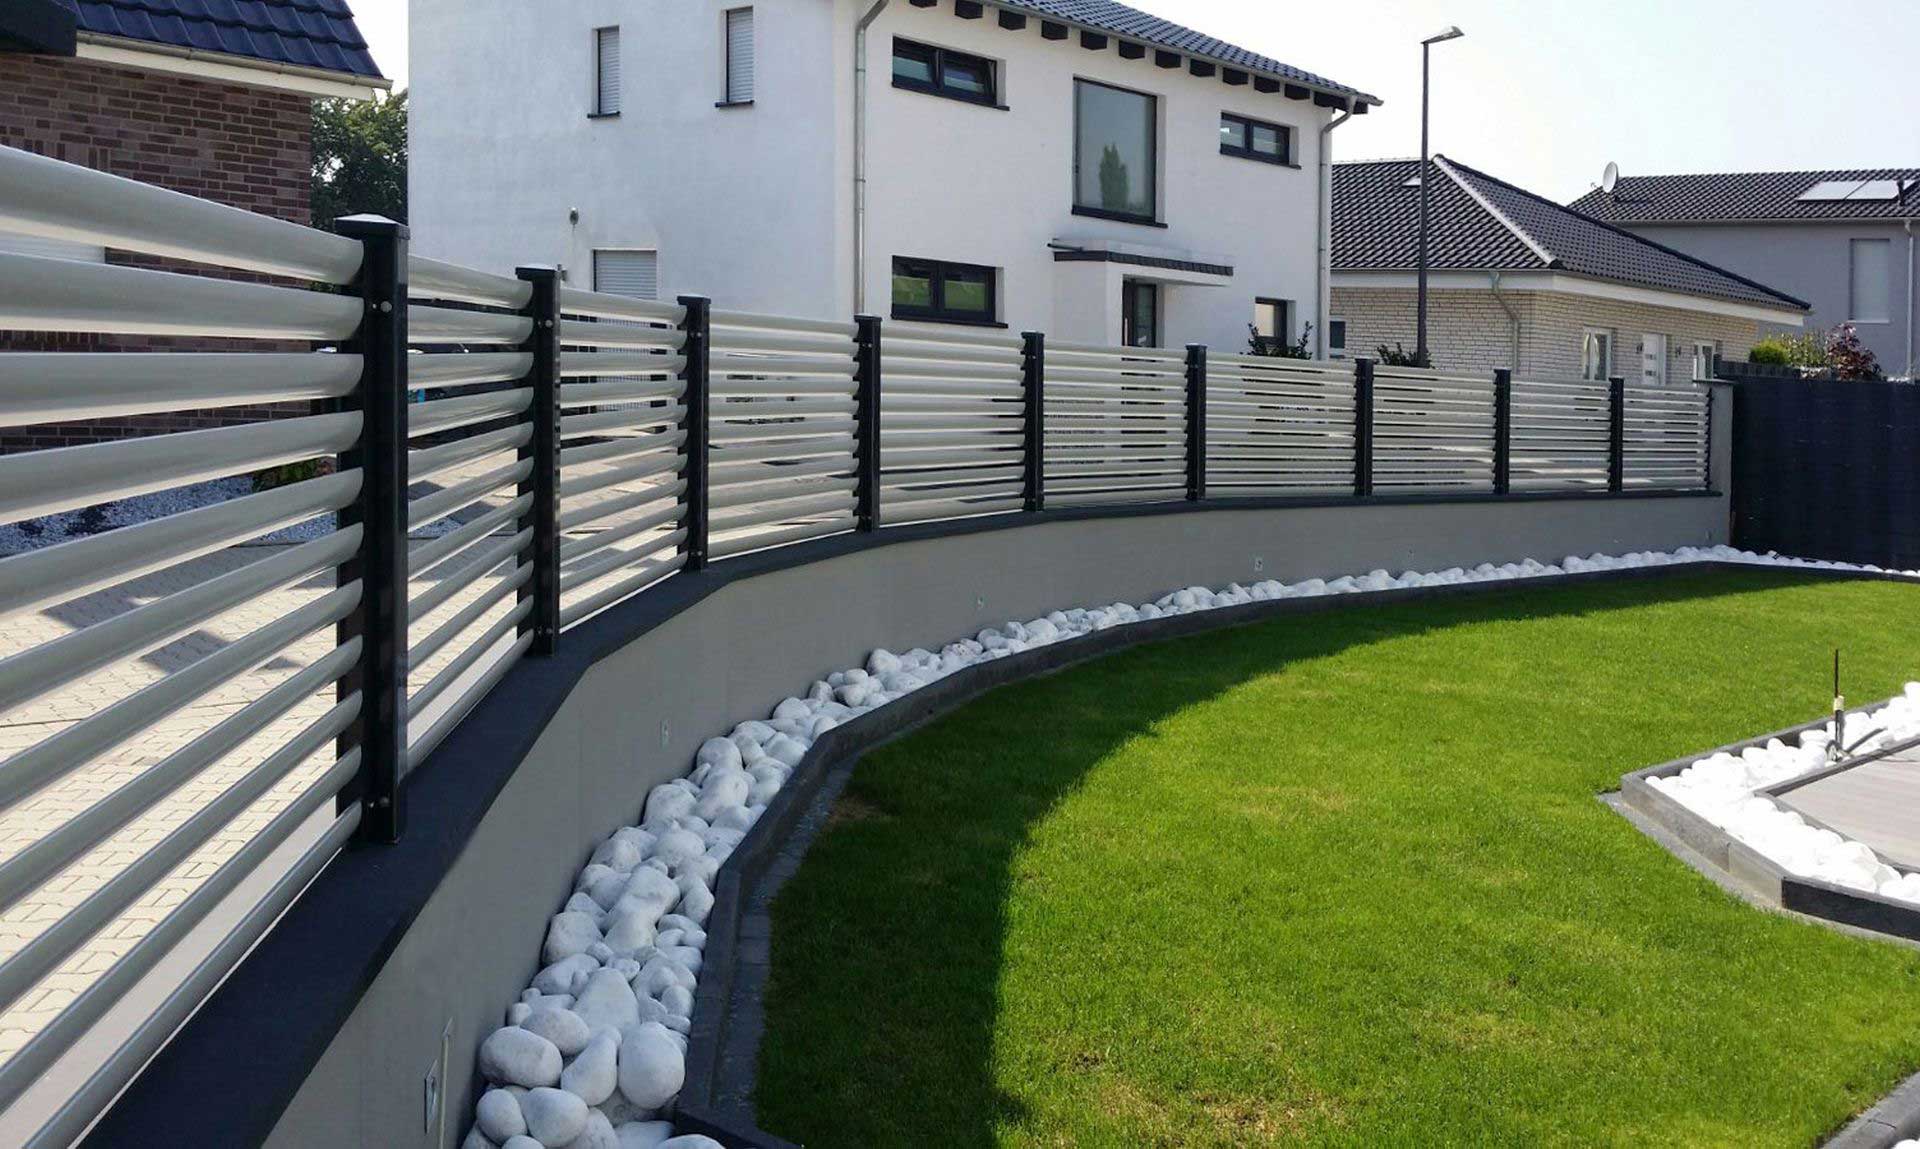 Clôture en blanc sur toute l'image, devant la clôture une grande pelouse dans un jardin, derrière la clôture une grande maison blanche